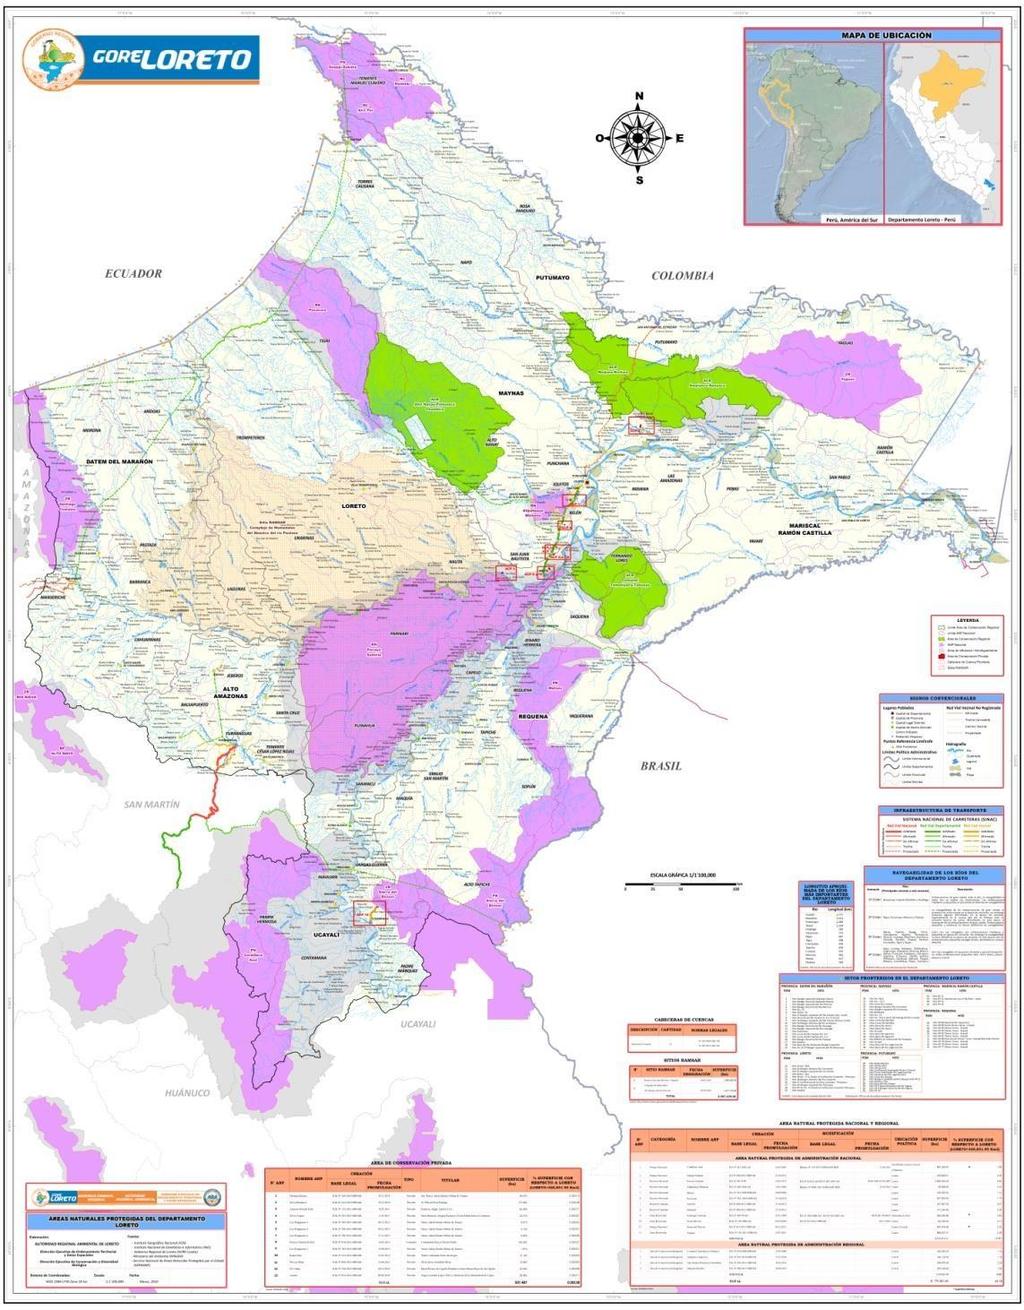 LORETO Y SUS ACR s 2 199,885 ha de bosques protegidos en Áreas de Conservación Regional.